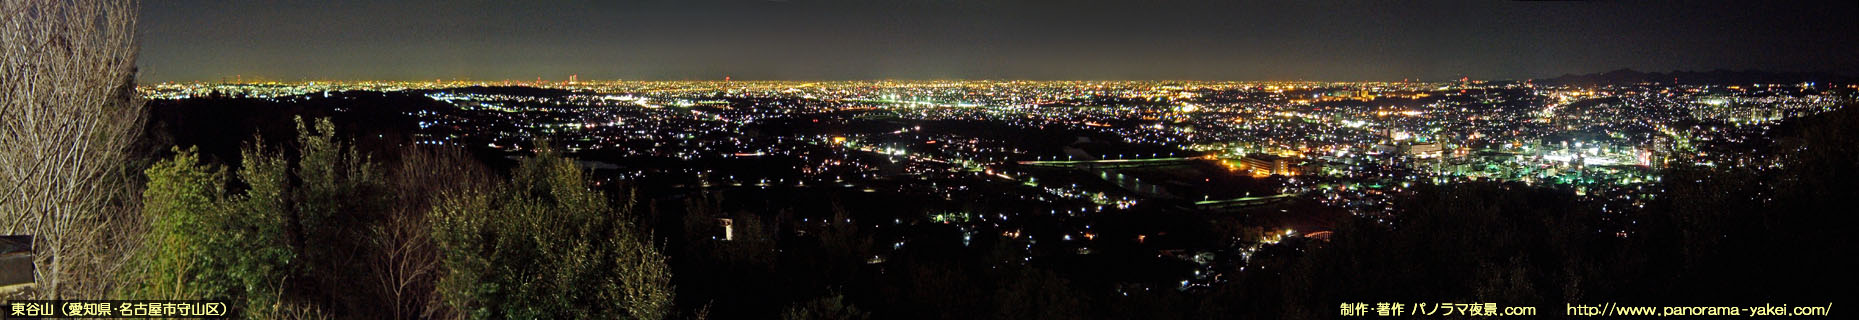 東谷山 山頂展望台からのパノラマ夜景写真